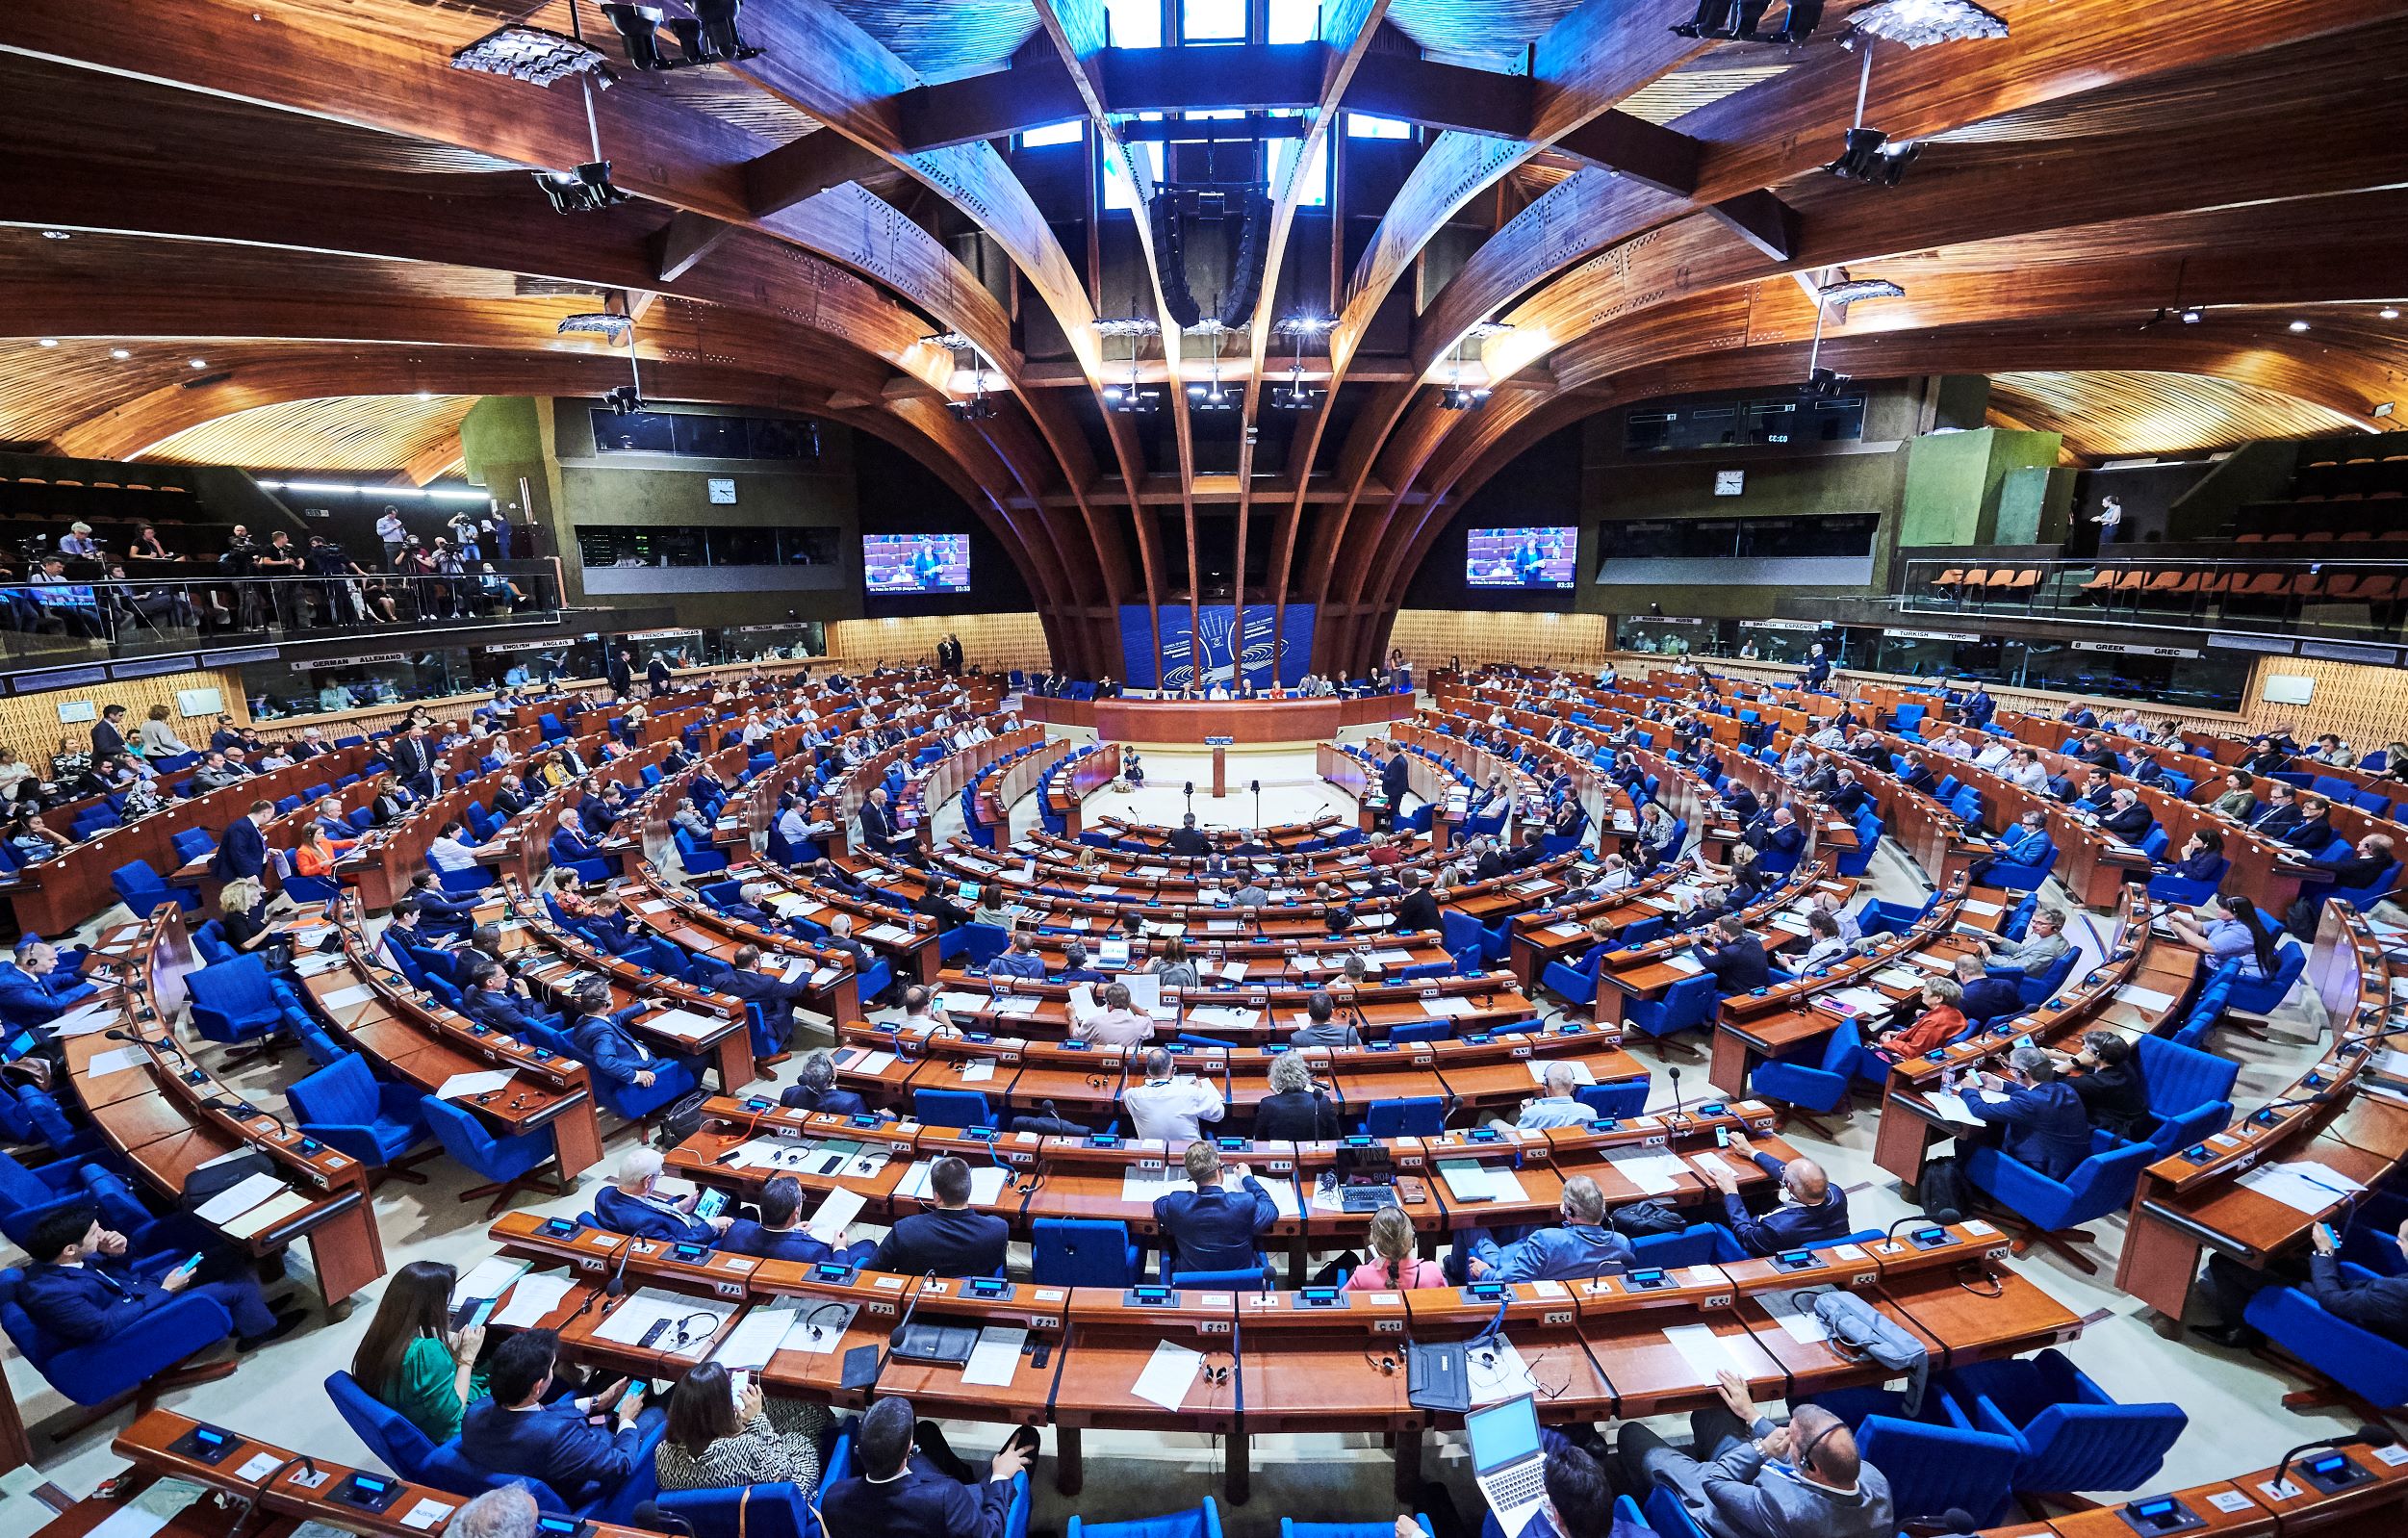 Экосос оон. Зал заседаний парламентской Ассамблеи совета Европы в Страсбурге. Парламентская Ассамблея совета Европы (ПАСЕ). Совет Европы (Council of Europe).